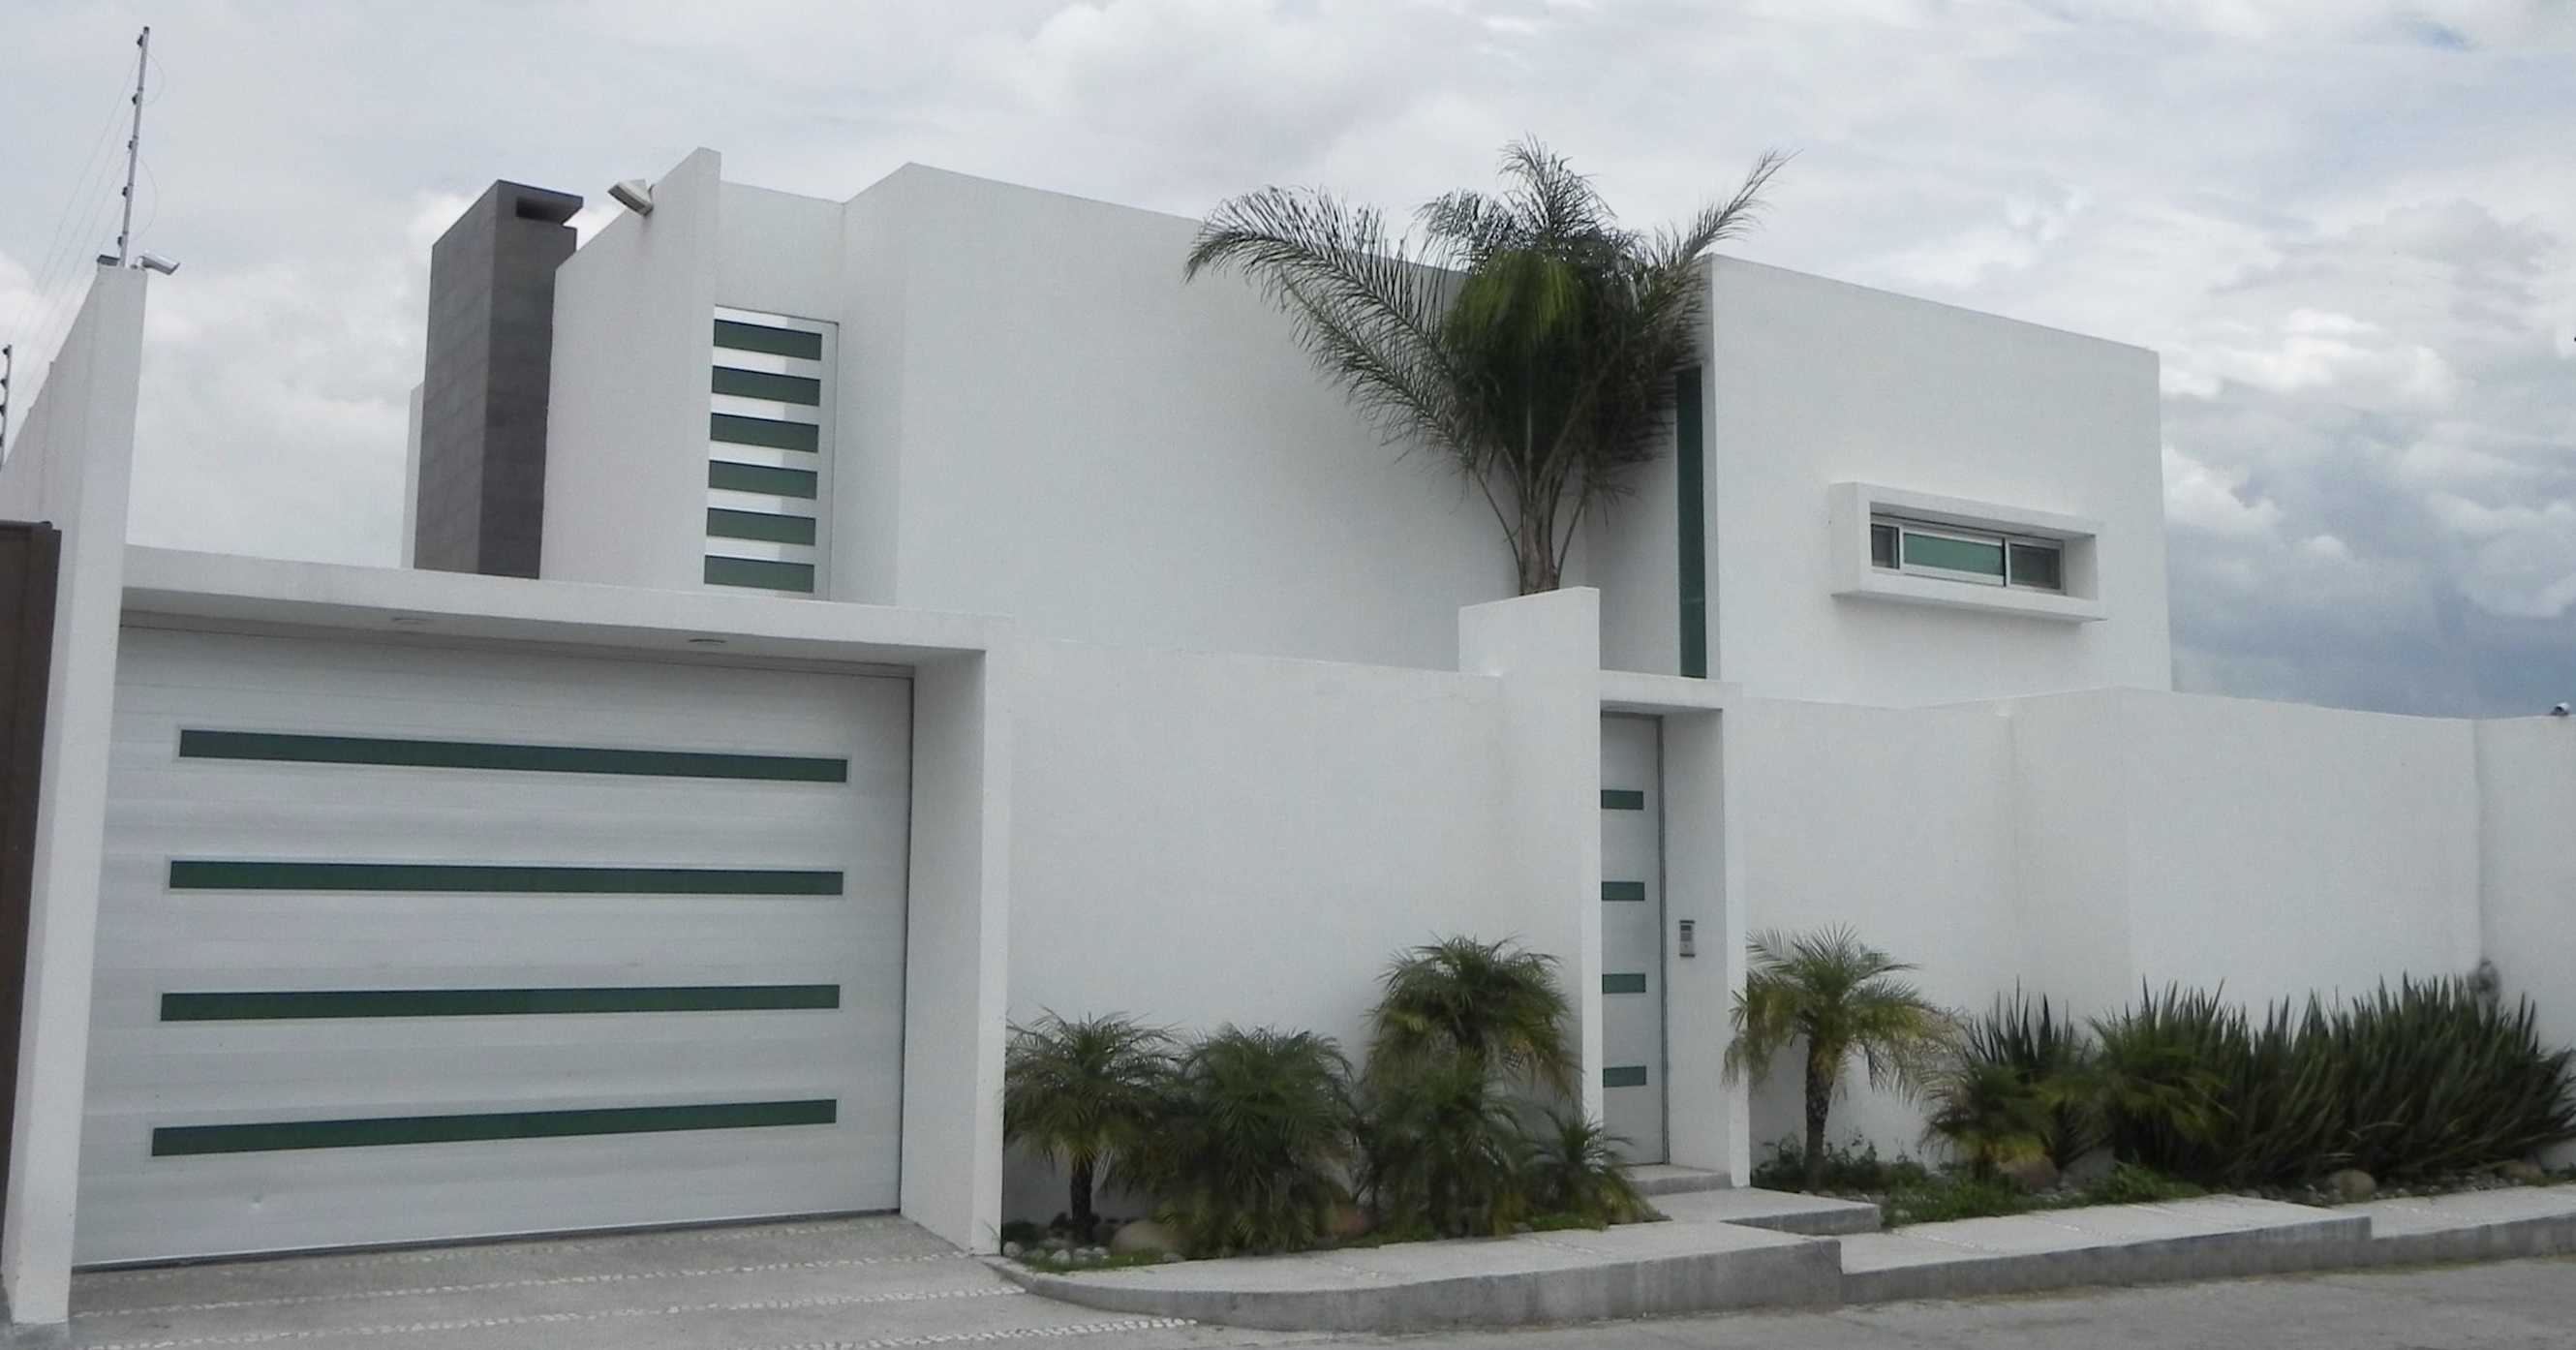 fasad rumah minimalis tertutup